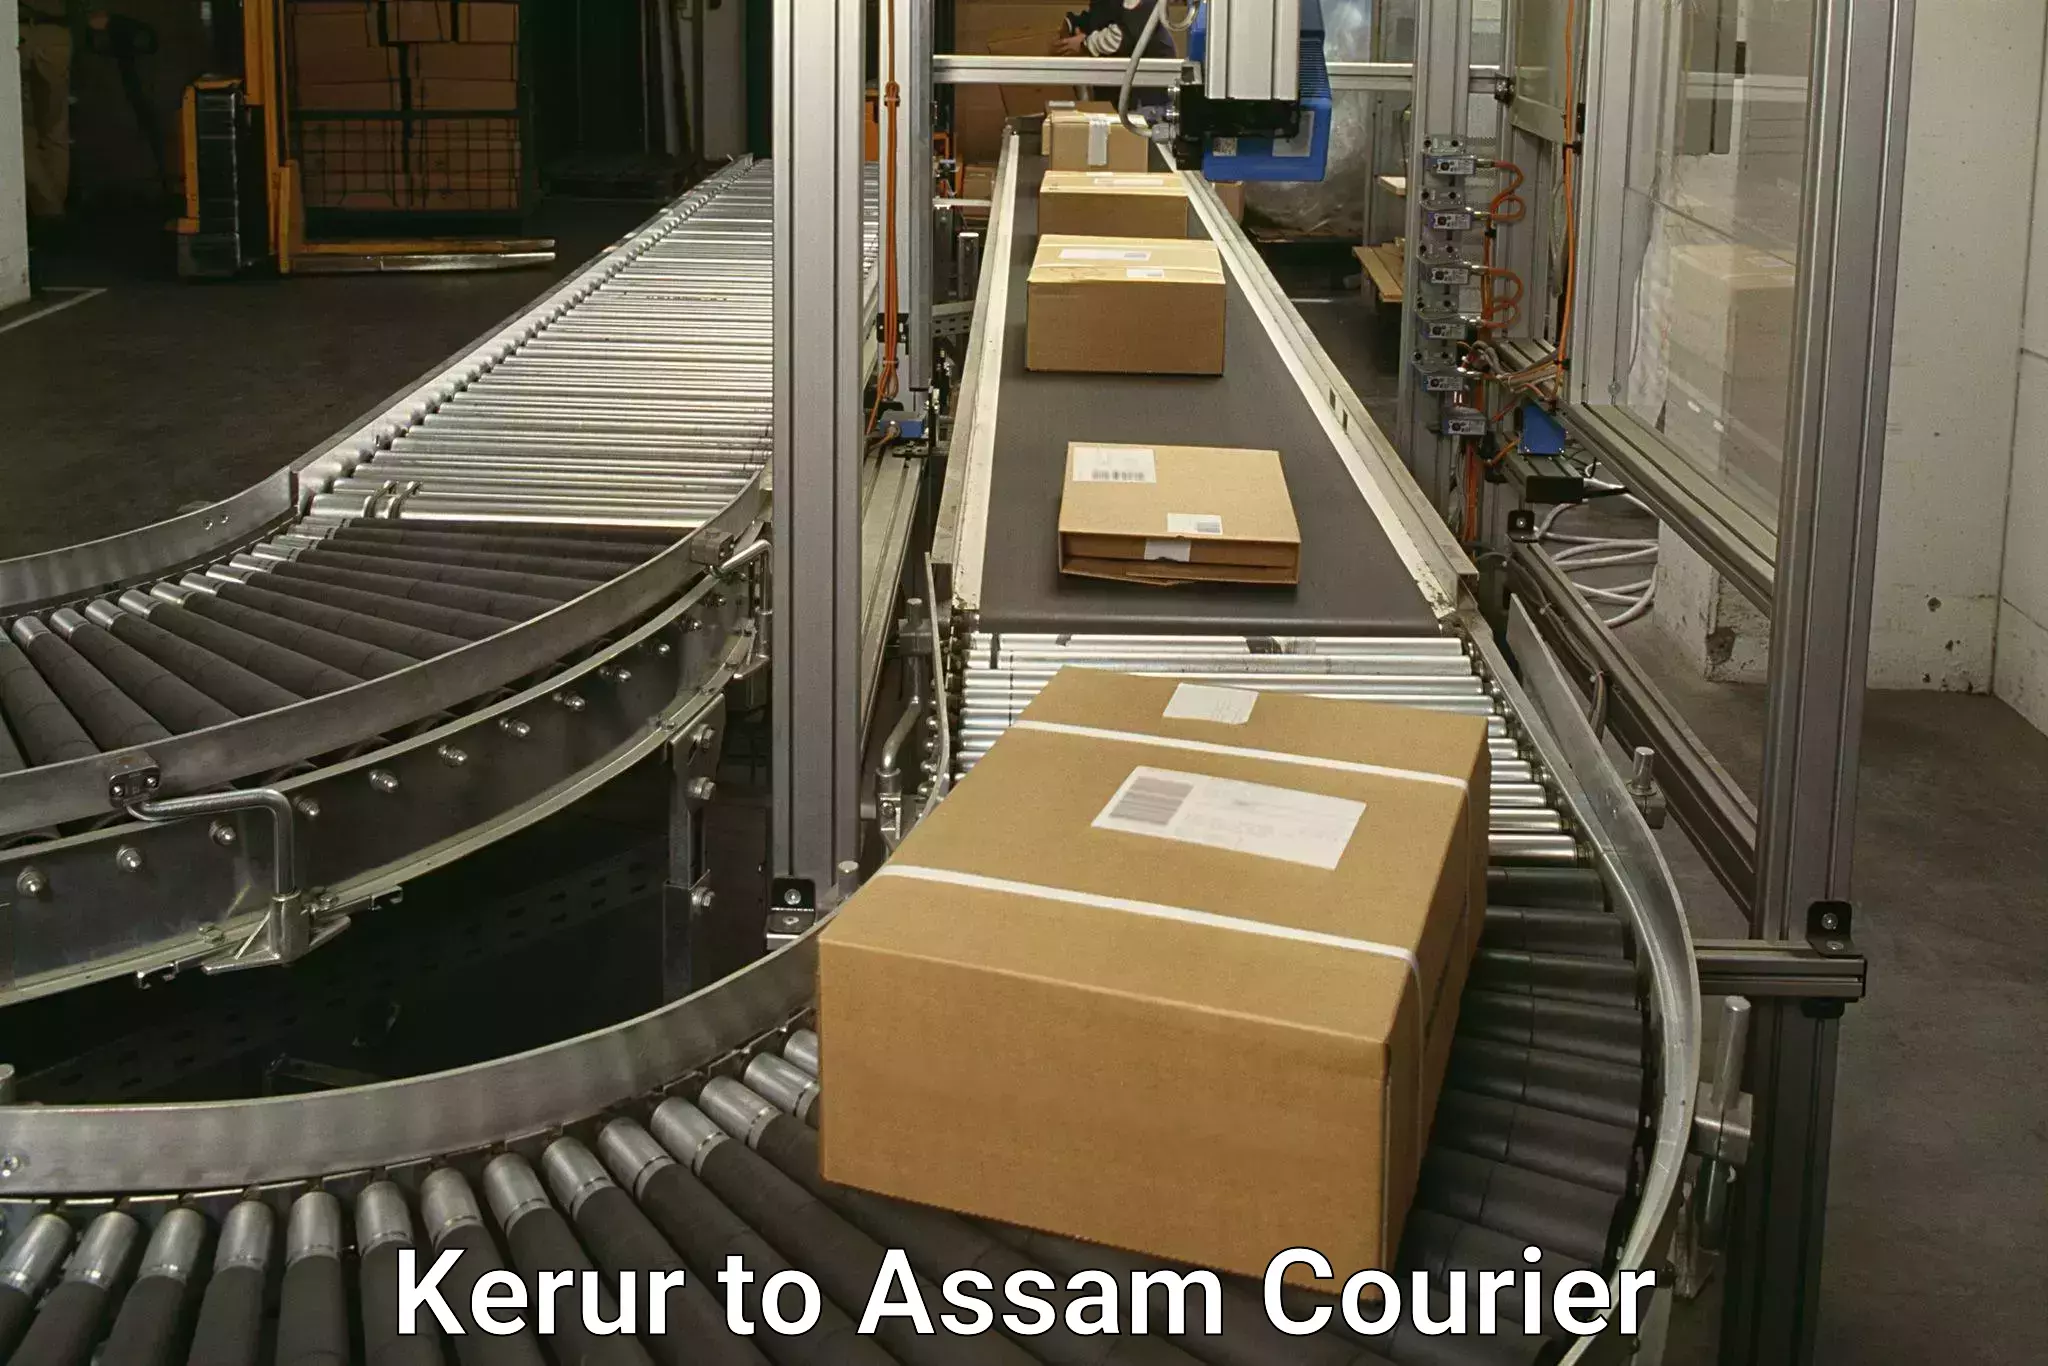 Expedited parcel delivery Kerur to Badarpur Karimganj